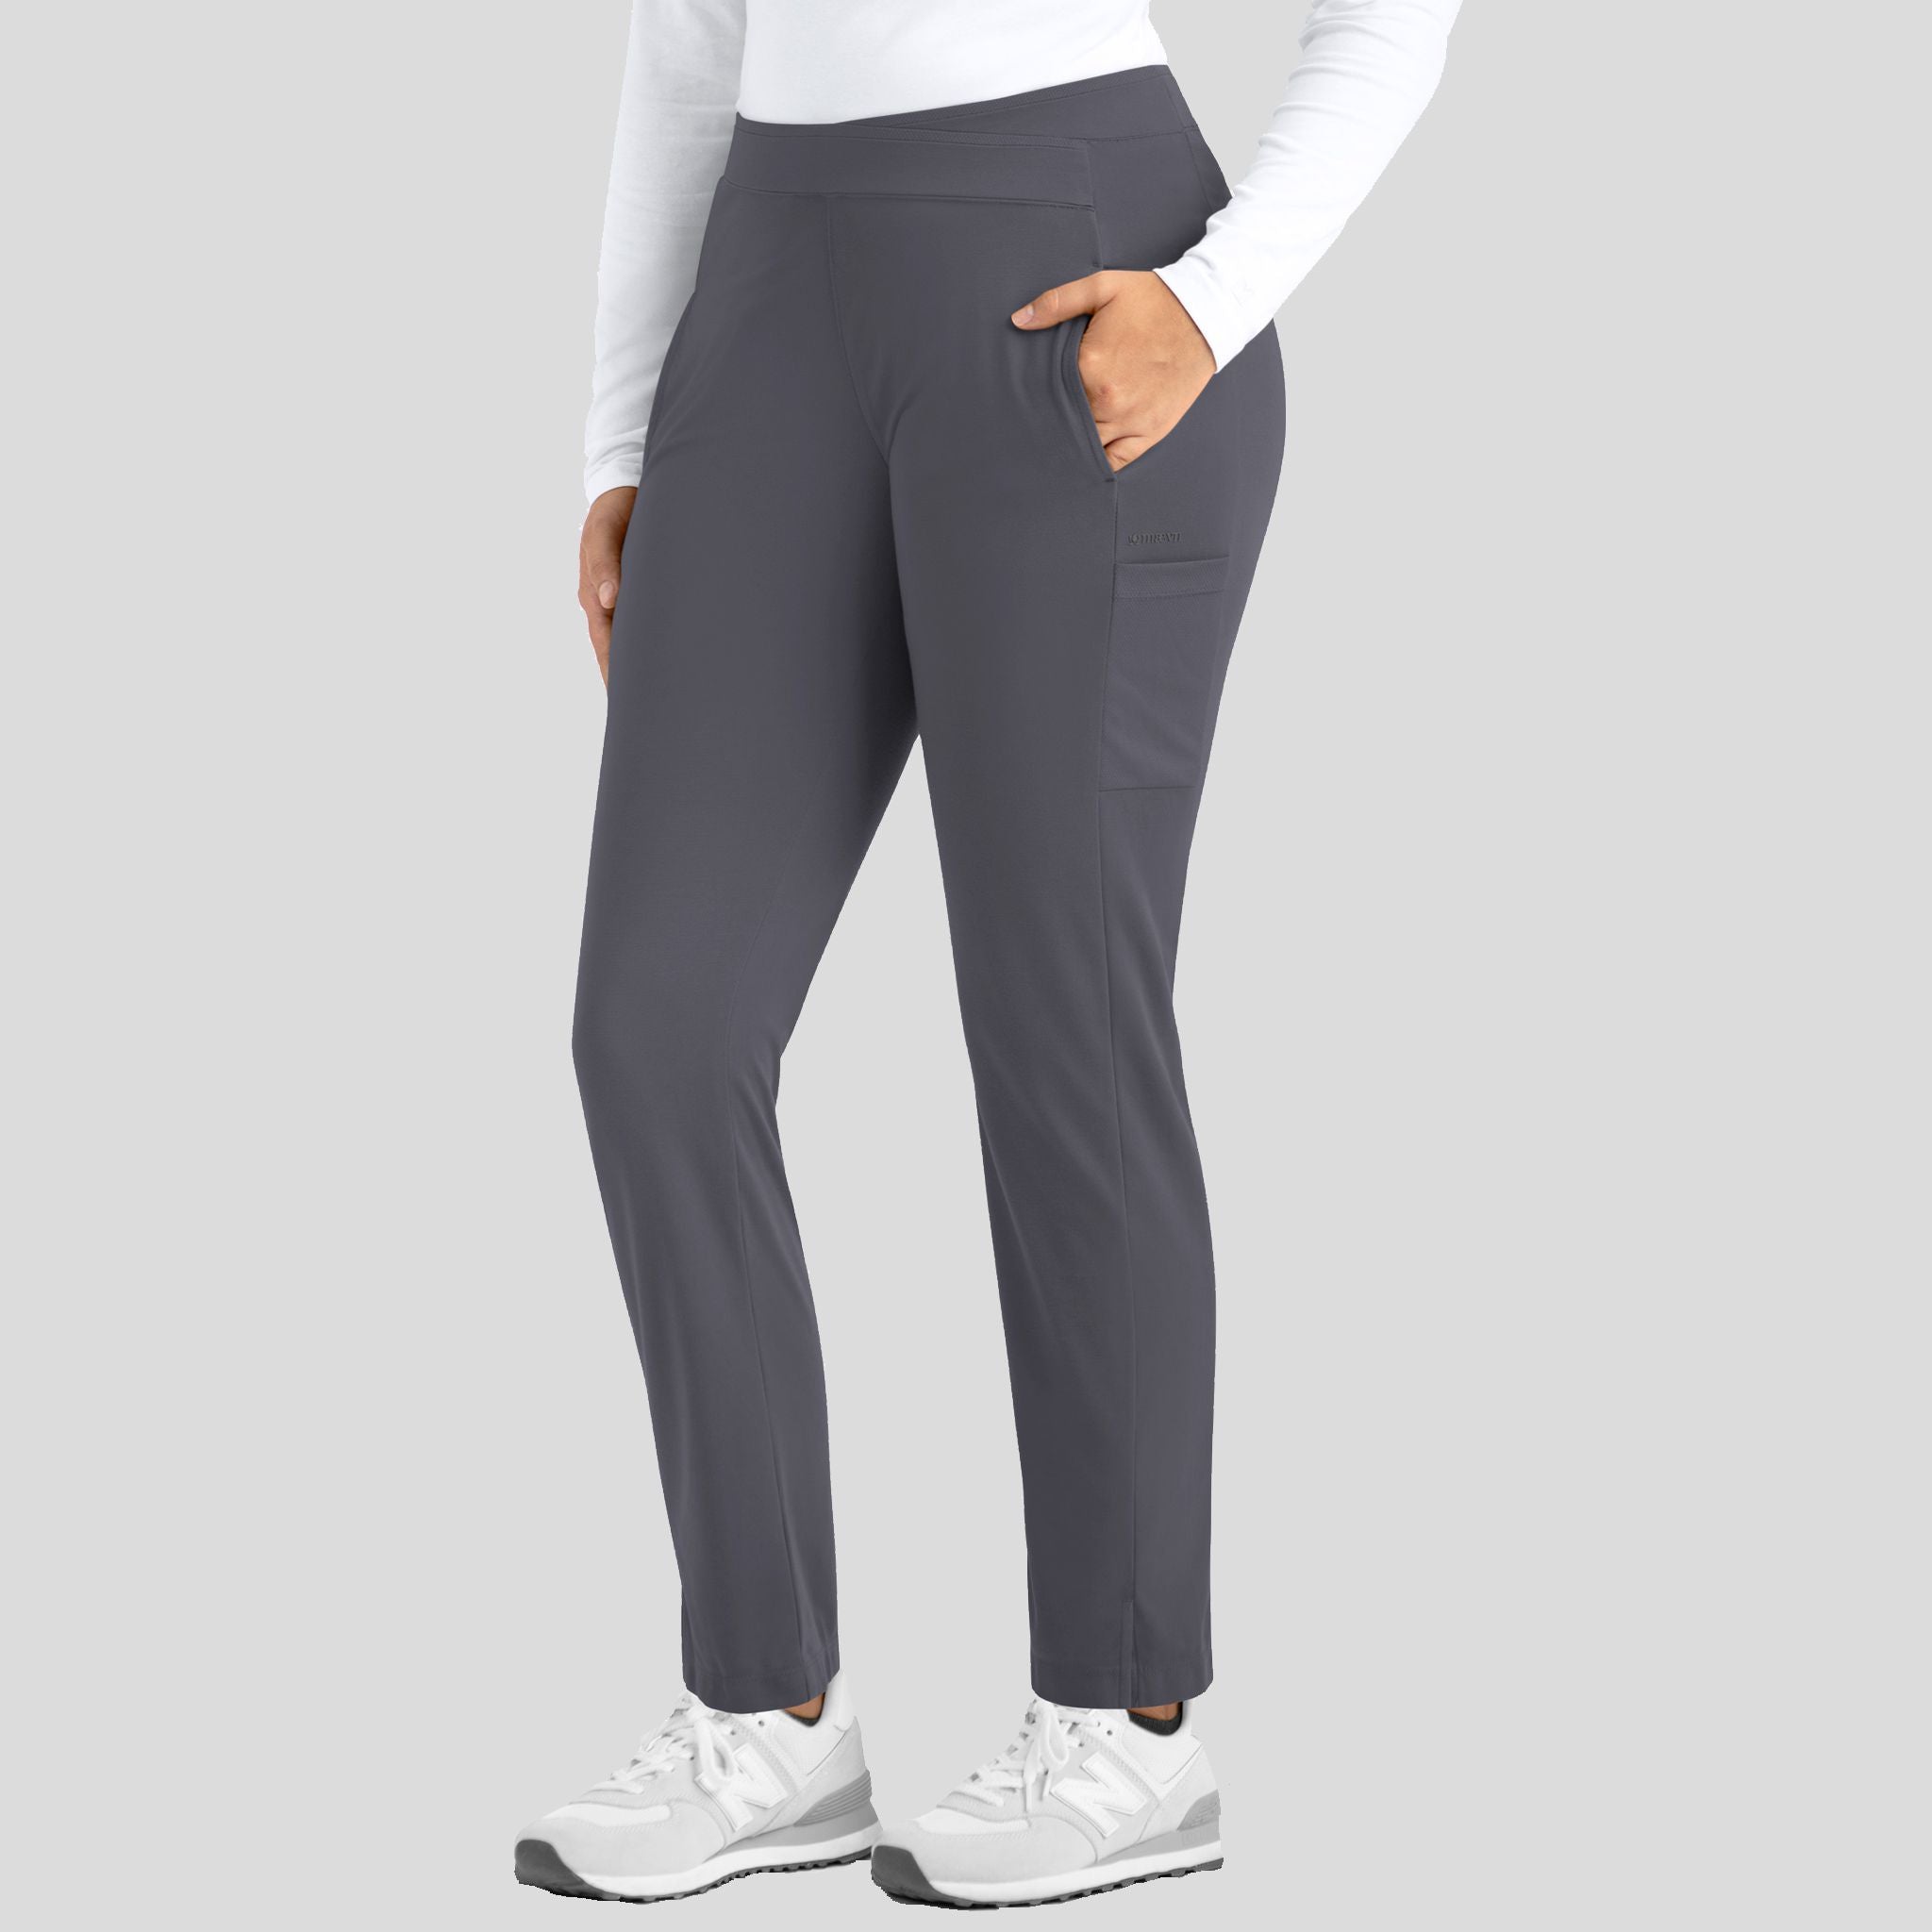 Women's, Comfycush Wash Unisex Track Pants, MeadowsprimaryShops